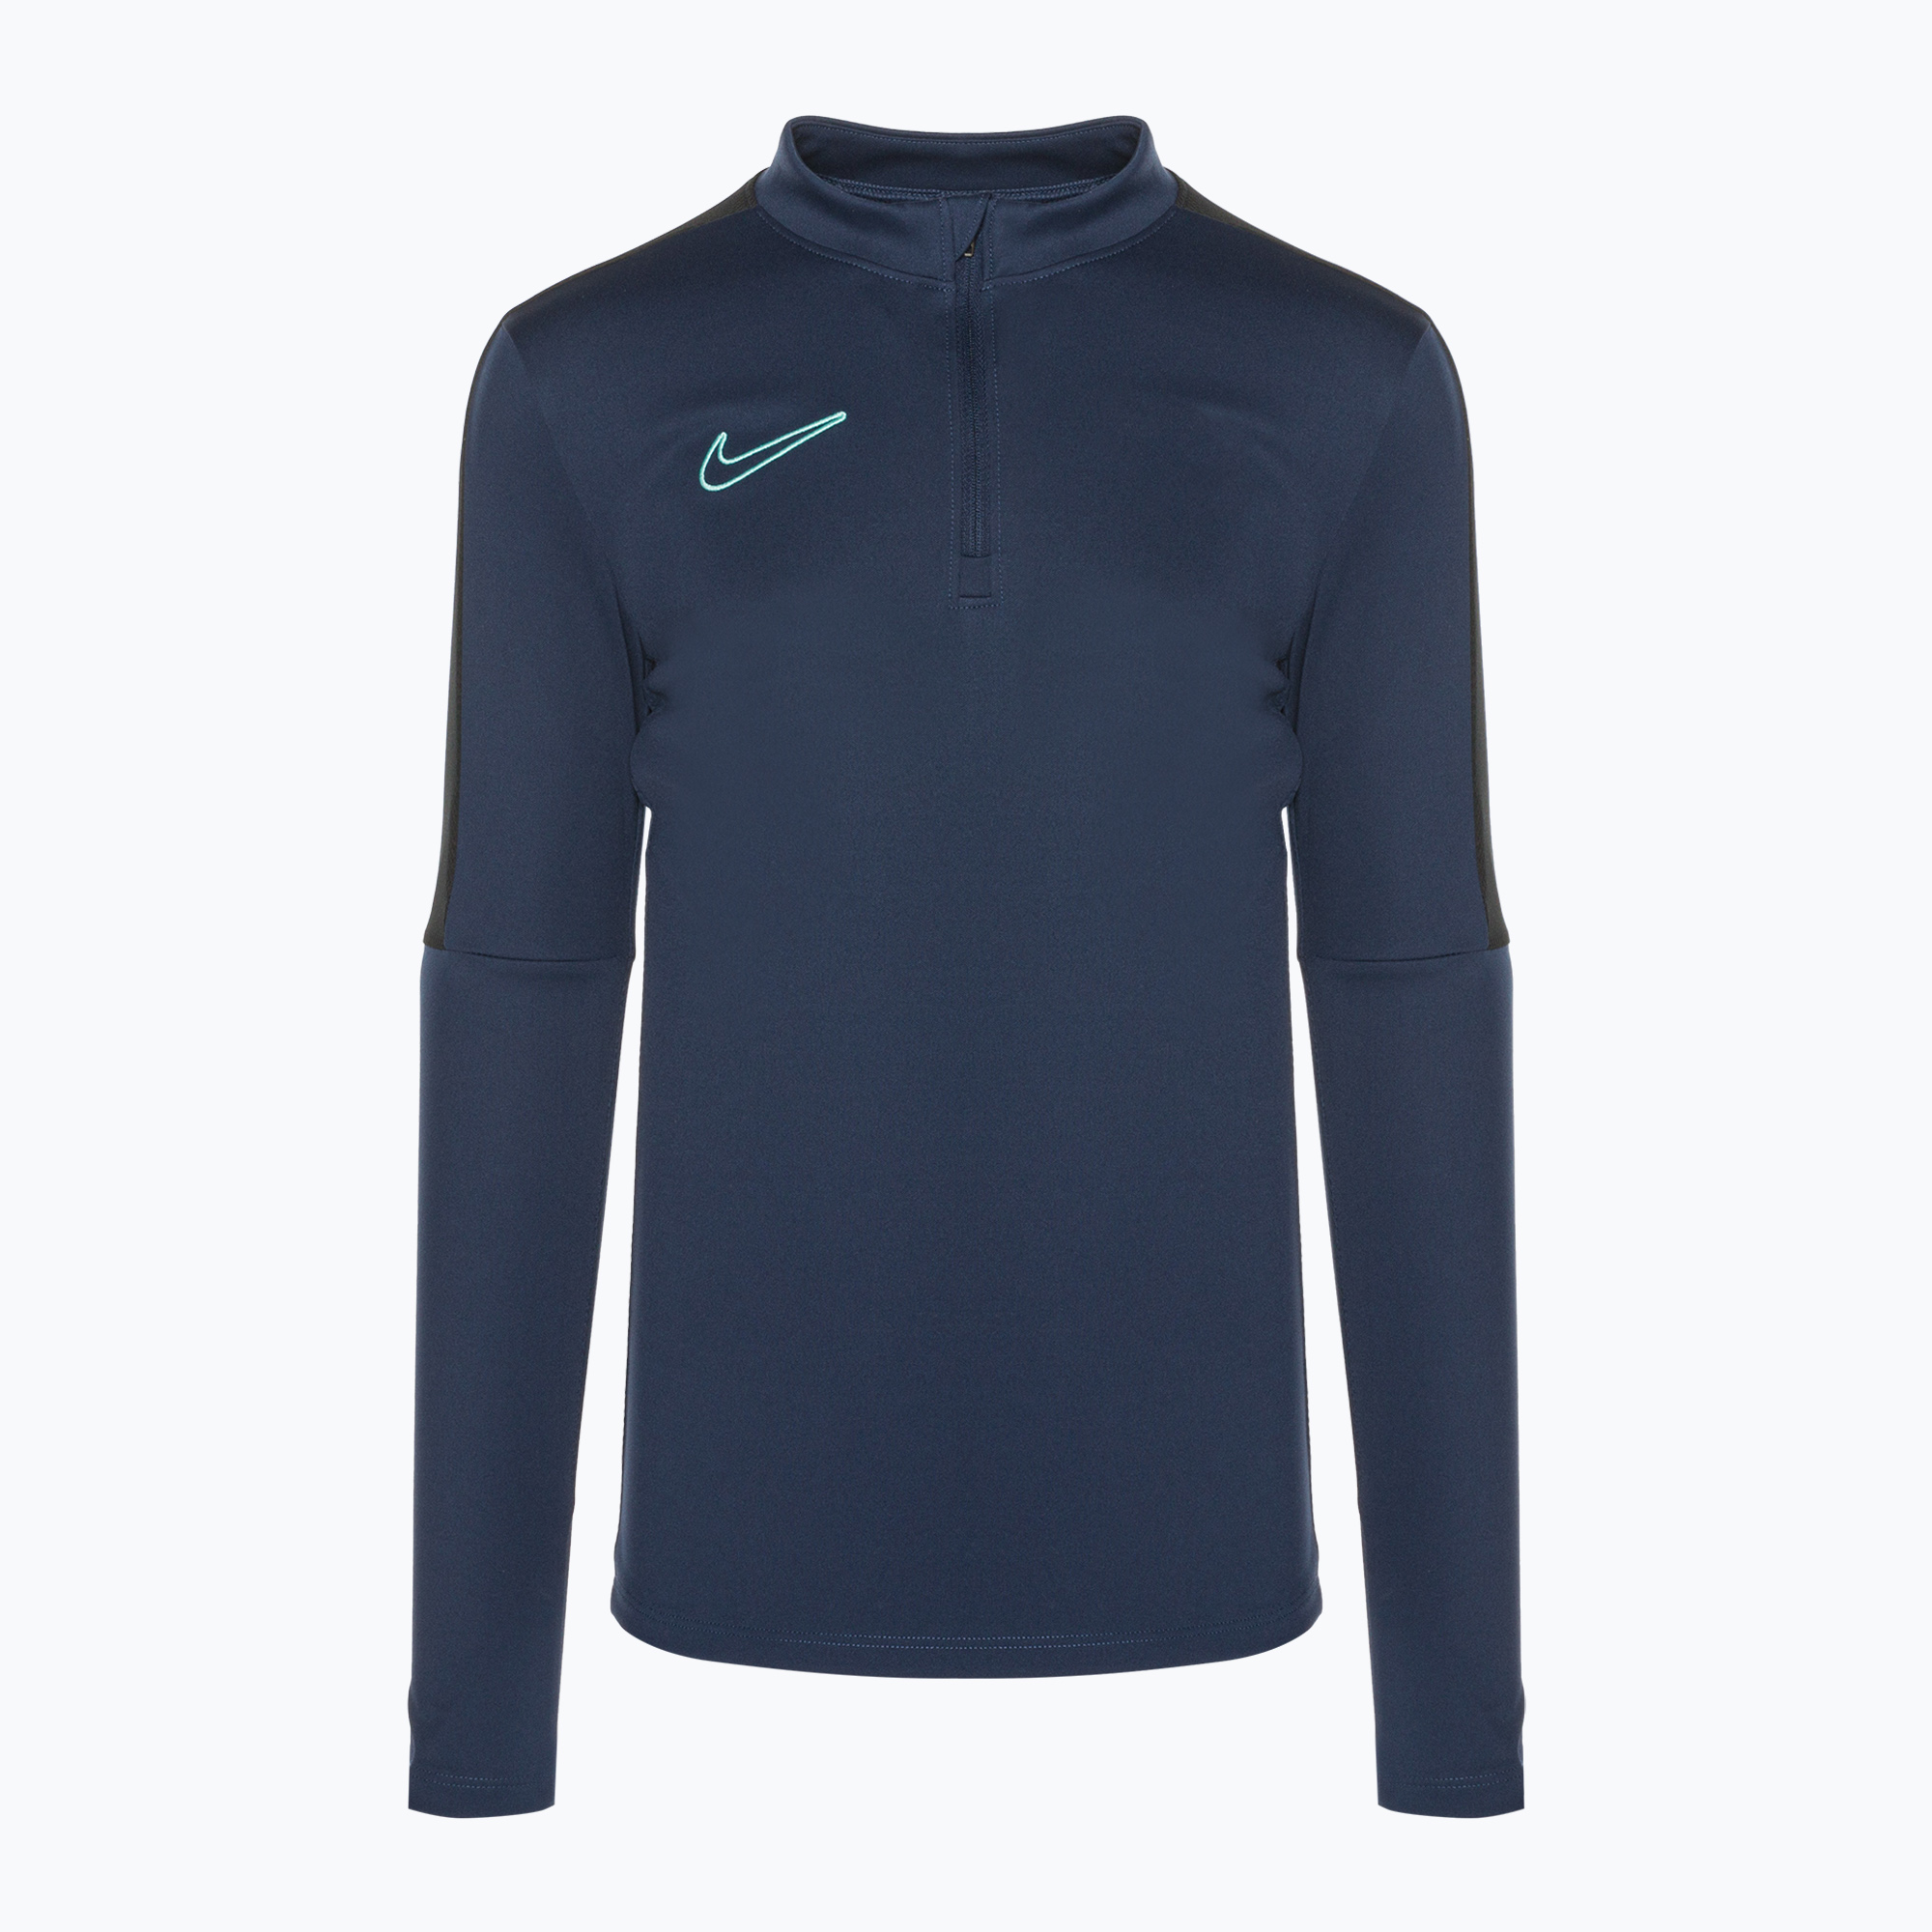 Detské futbalové tričko s dlhým rukávom Nike Dri-Fit Academy23 midnight navy/black/midnight navy/hyper turquoise